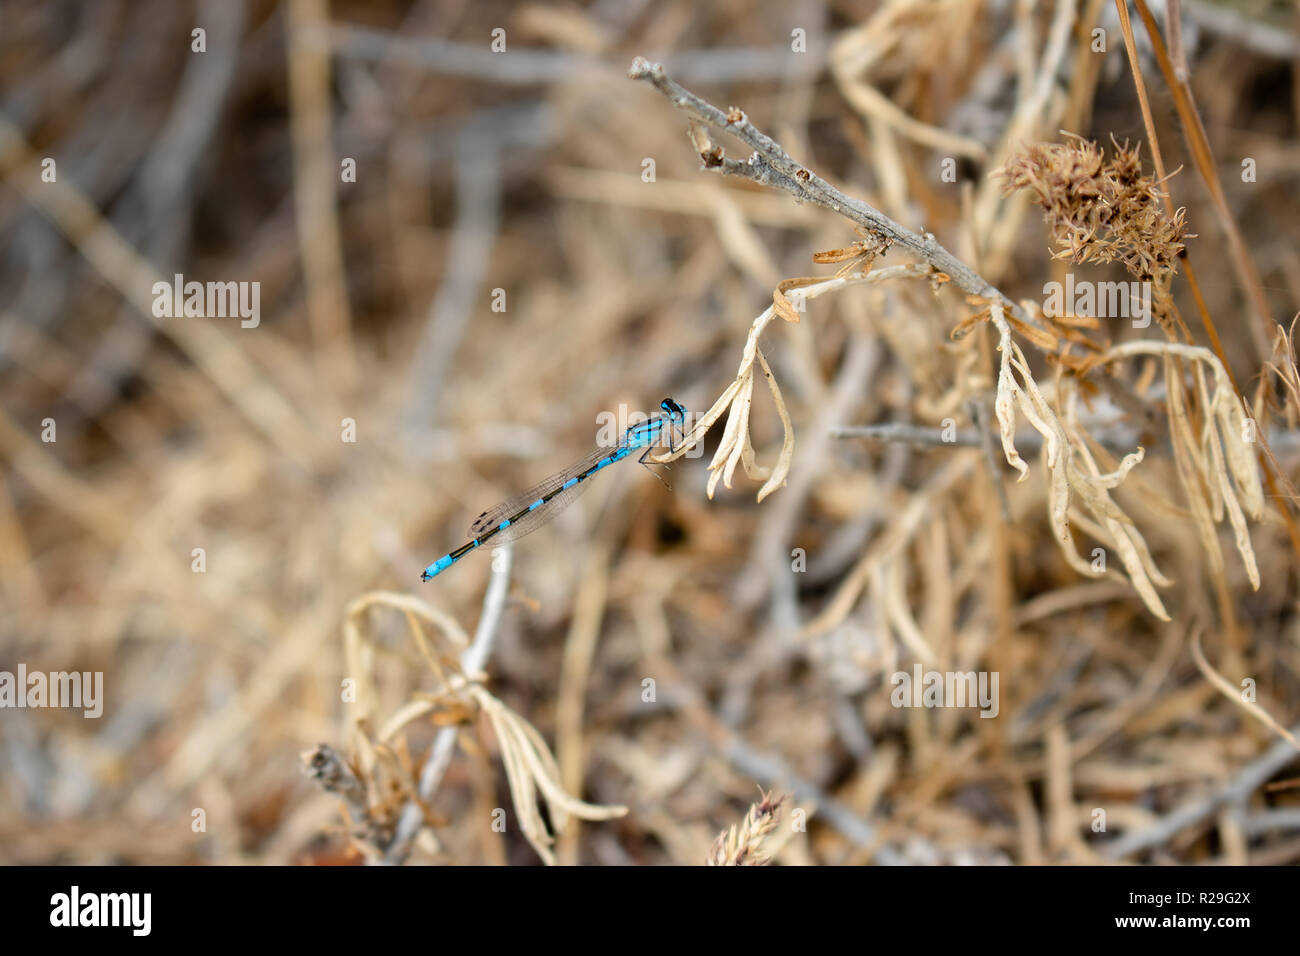 Dies ist ein Bild einer Libelle Landung auf die Pflanzen, die in der Nähe tot war er Boden. Stockfoto